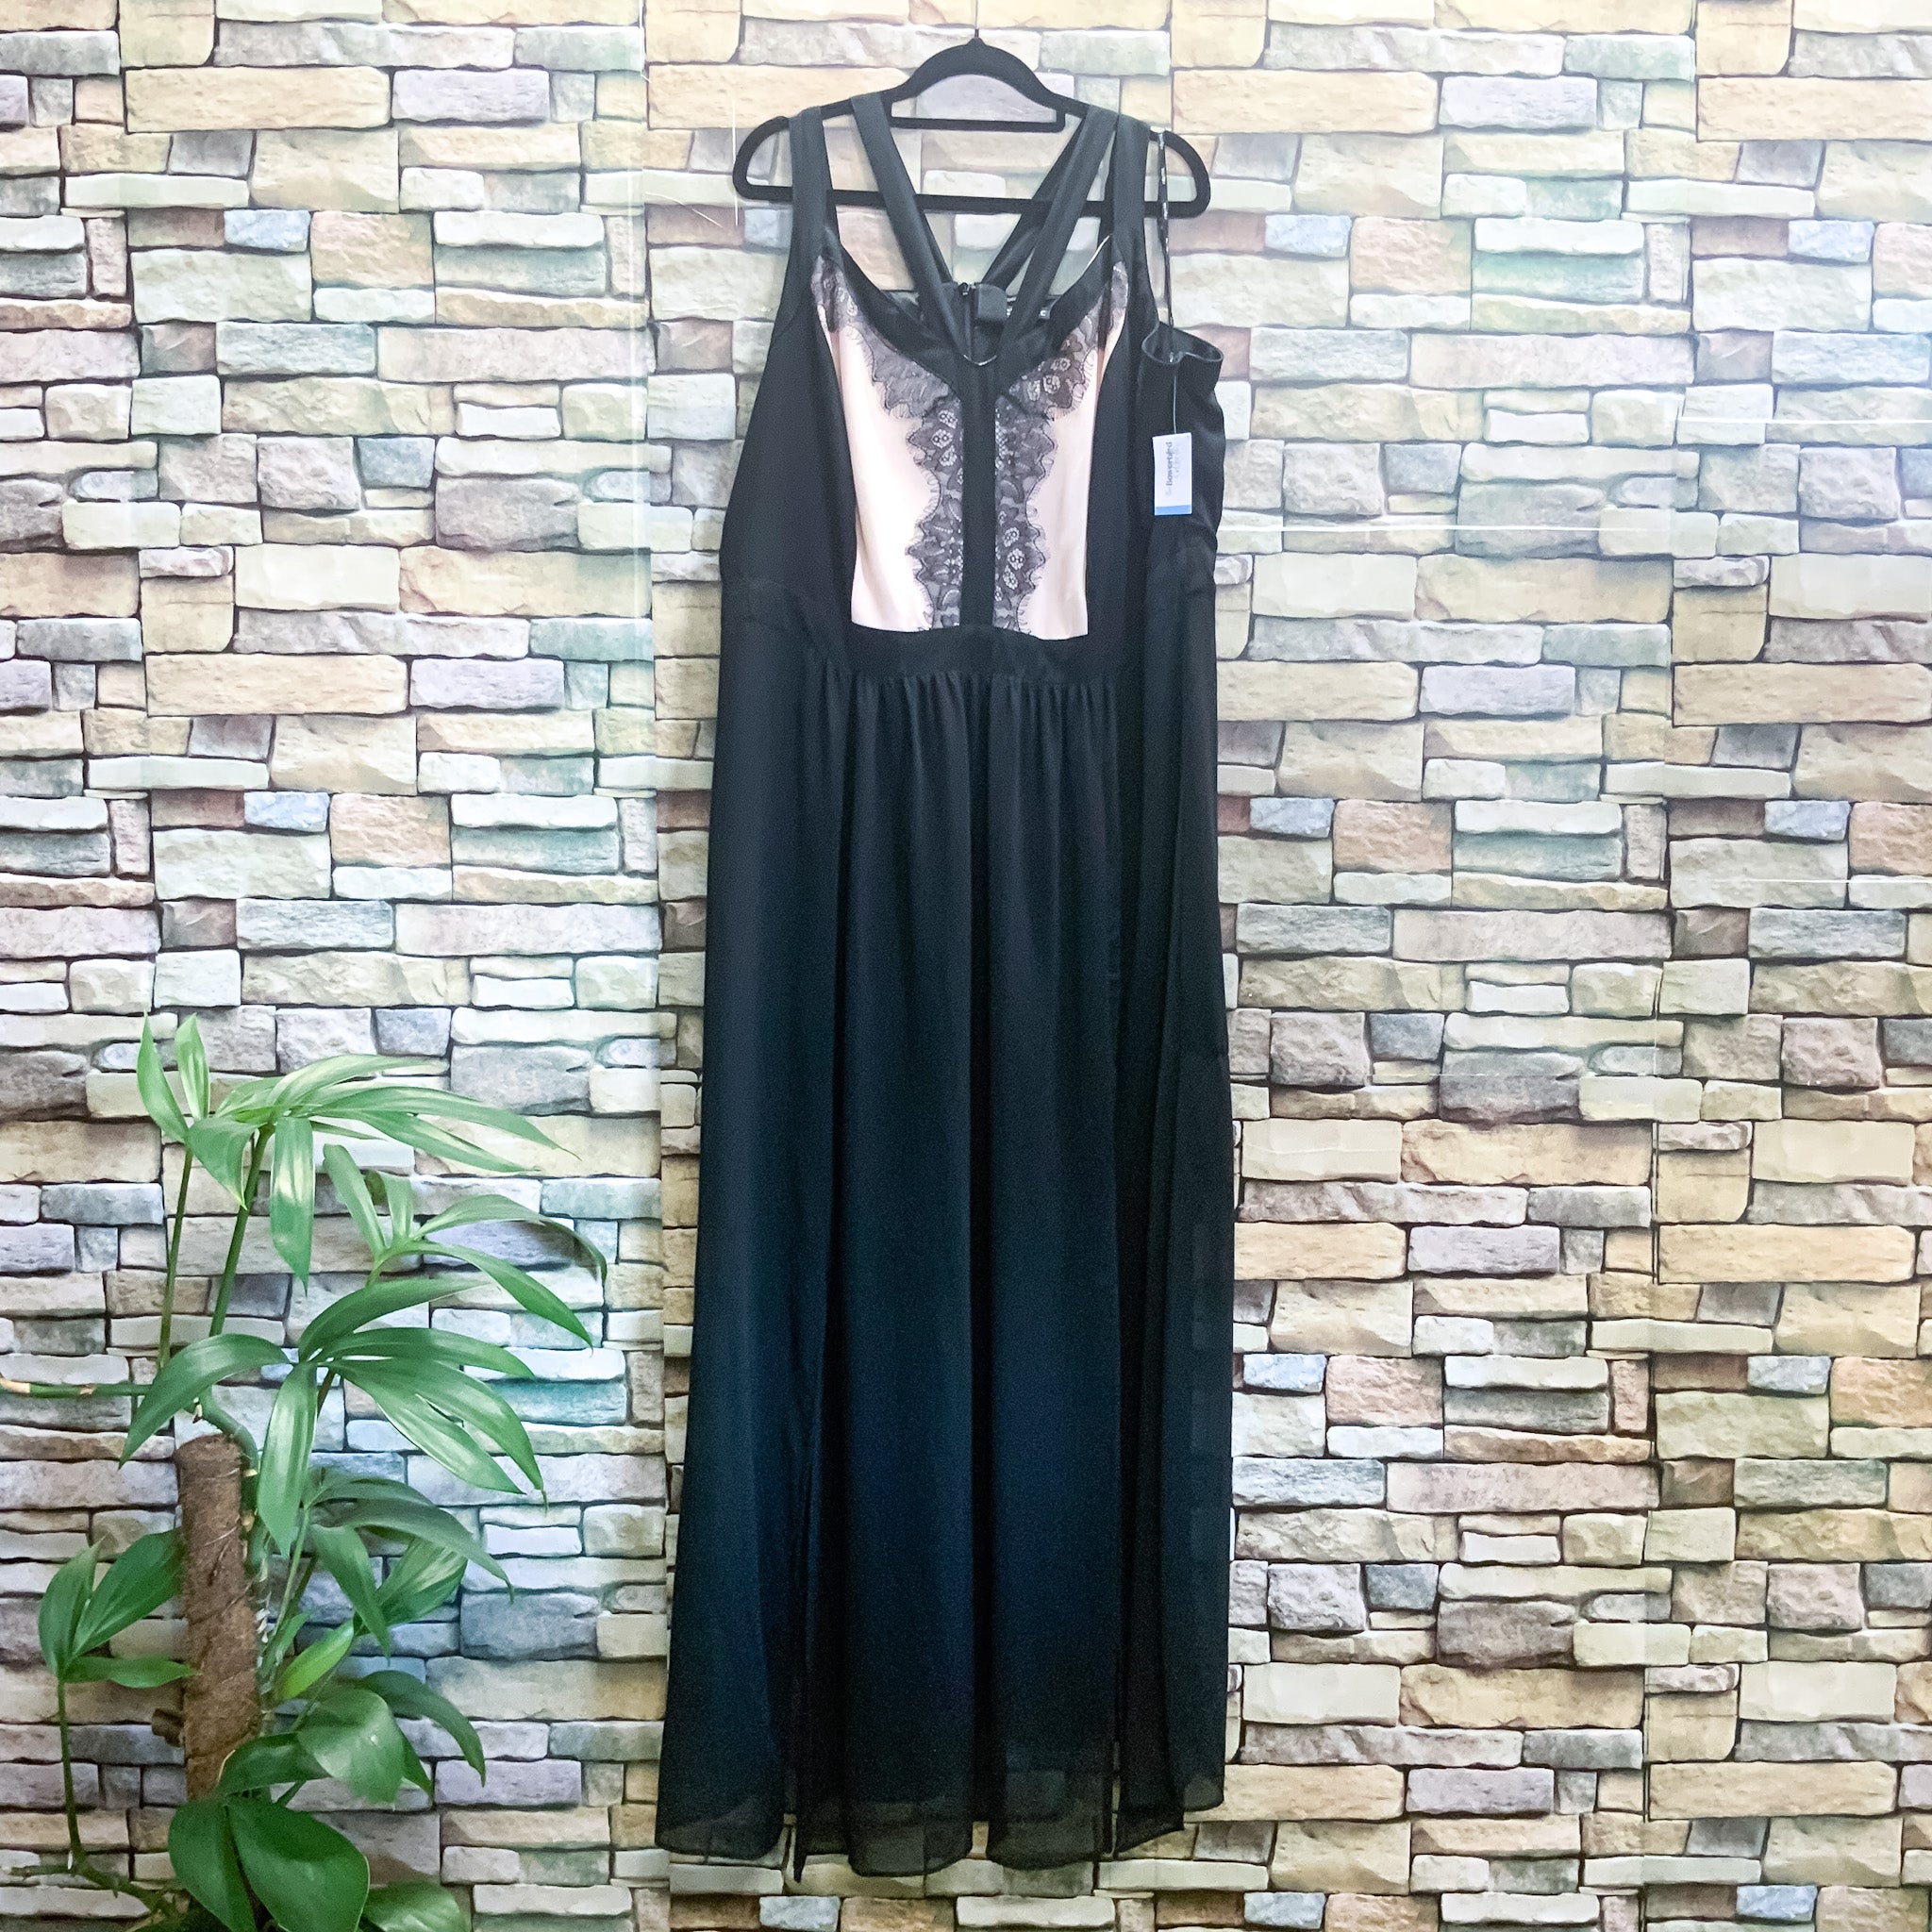 CITY CHIC Contrast Trim Lace Black Maxi Dress - Size AU16/18